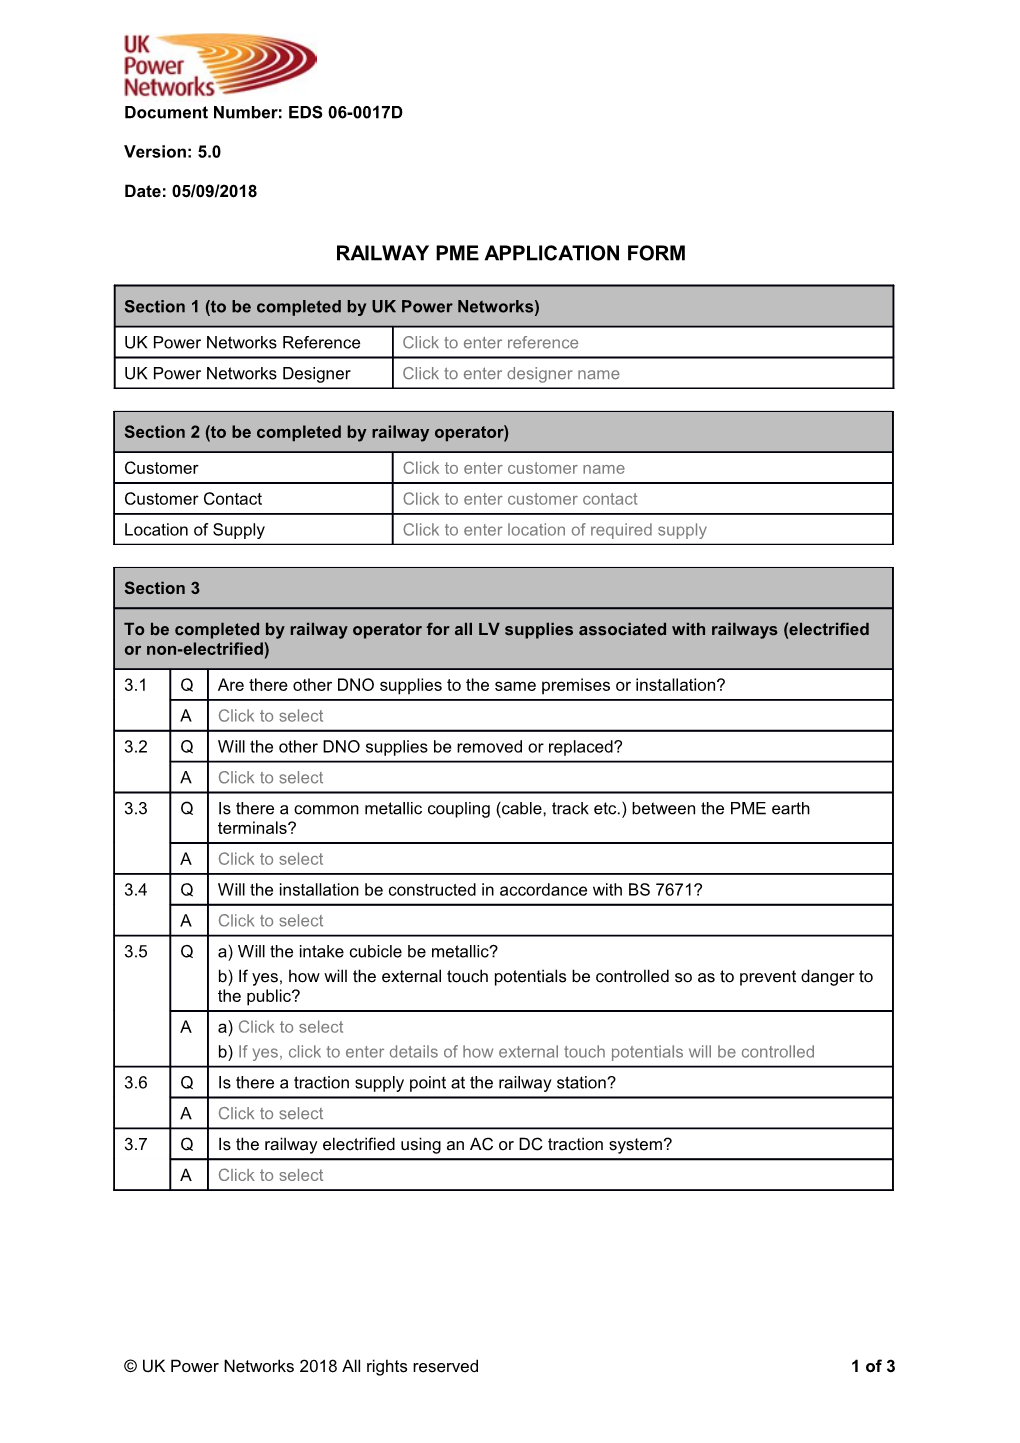 EDS 06-0017D Railway PME Application Form